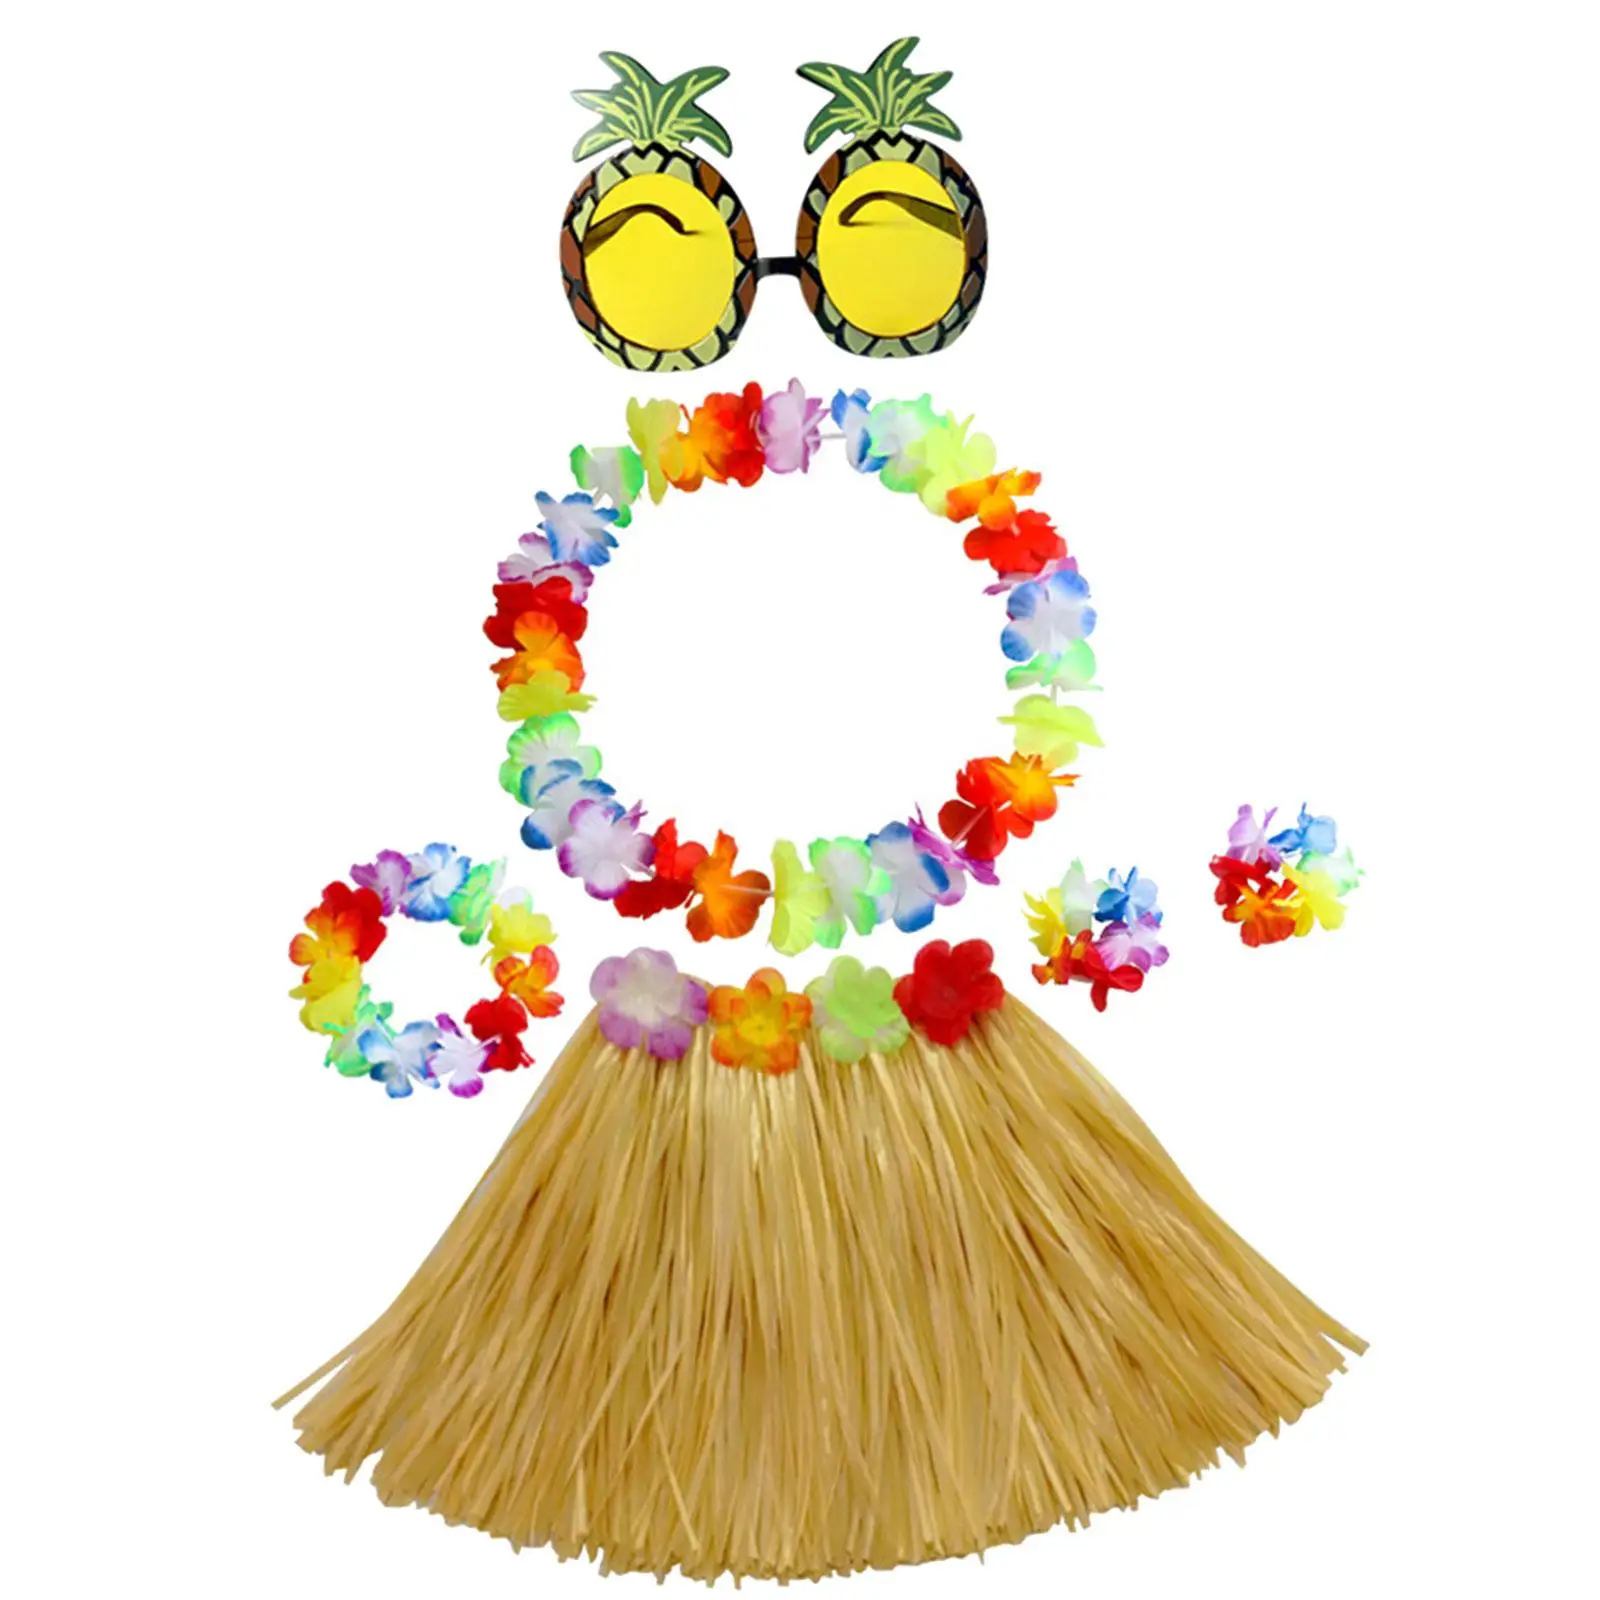 Hawaiian Grass Skirt Ladies Dress up Novelty Necklace for Party Favors Kids Girls Women Dance Performance Tropical Hawaiian